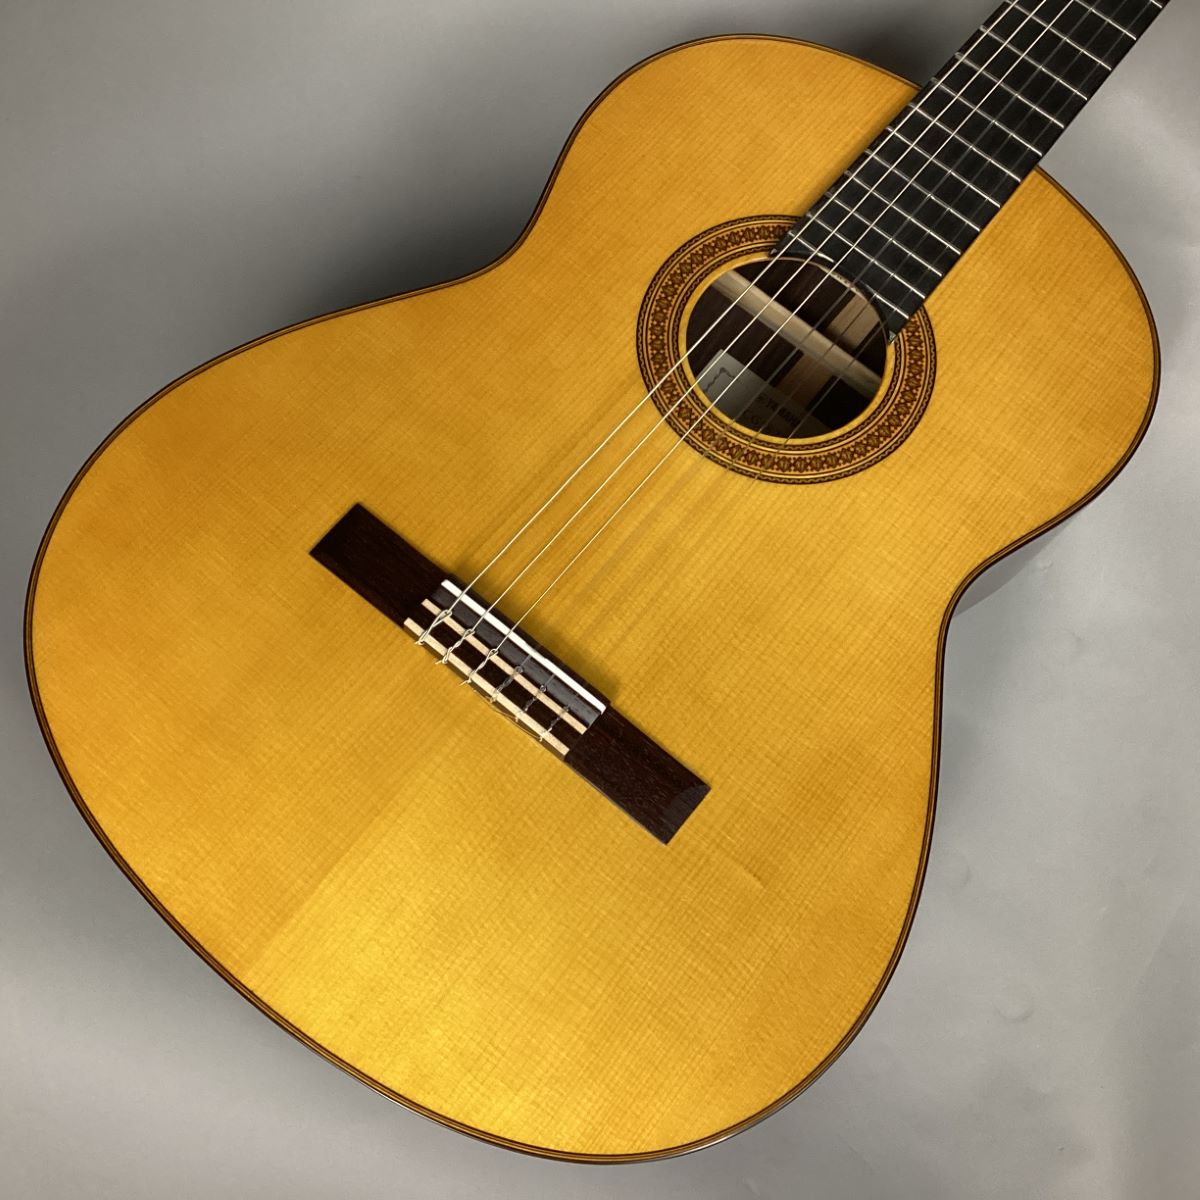 YAMAHA CG182S 【閉店在庫処分特価】 クラシックギター 650mm ヤマハ